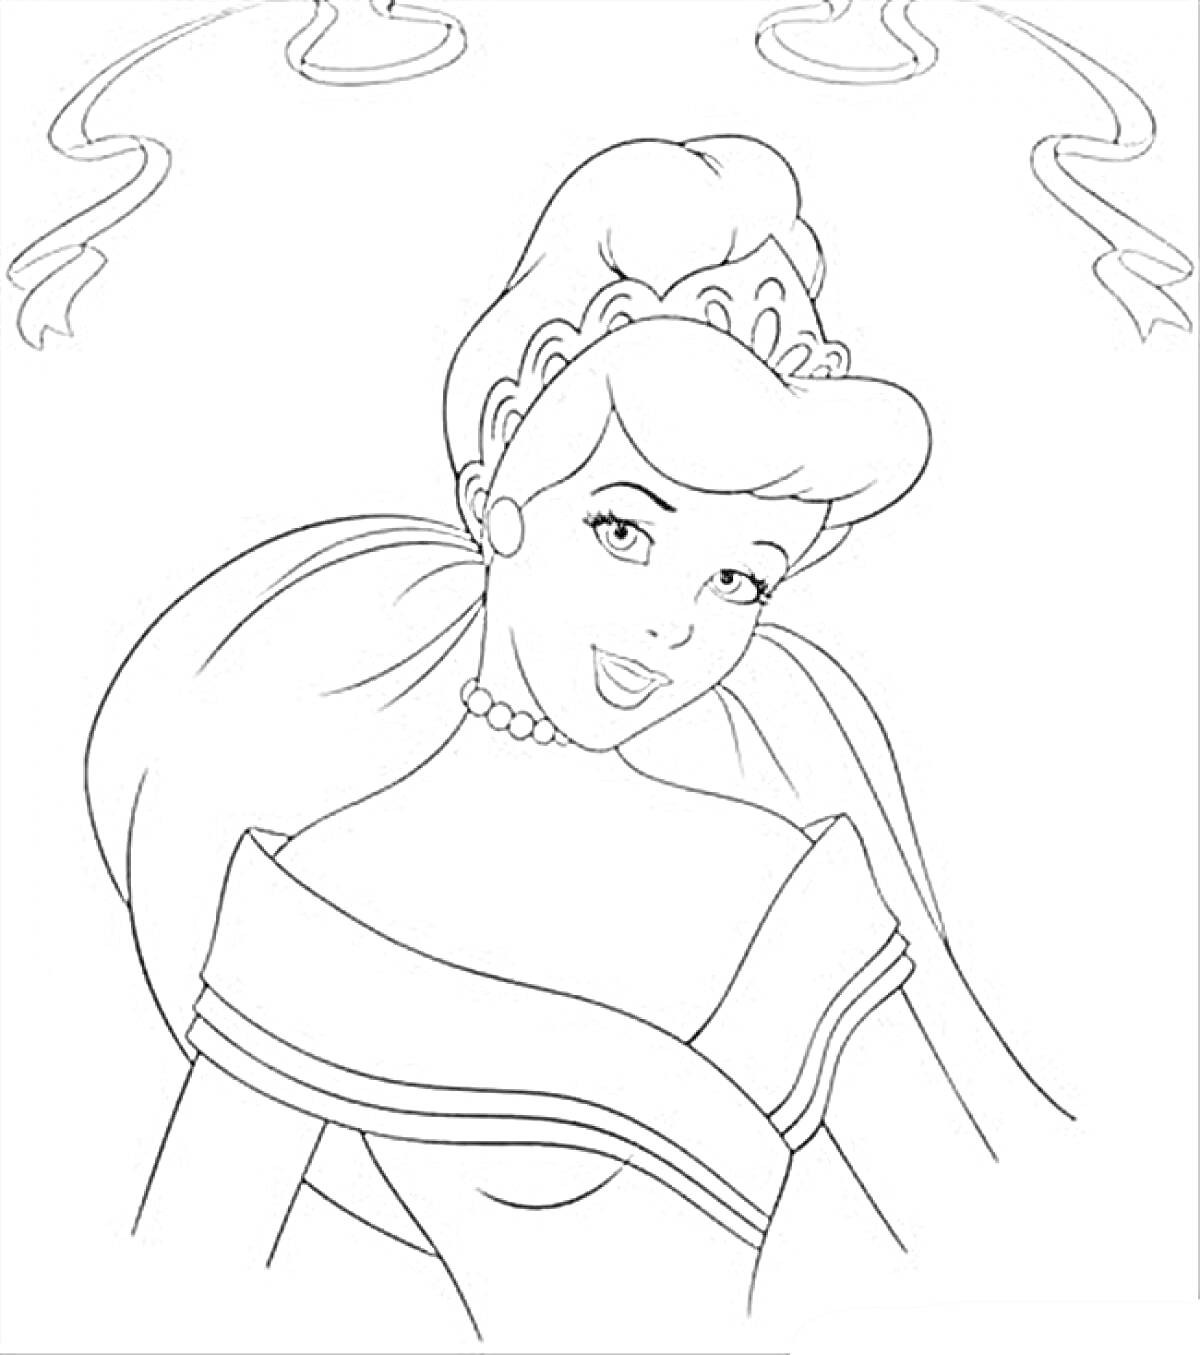 Раскраска Принцесса с тиарой, улыбающаяся в платье с оголёнными плечами, с ленточками на заднем фоне